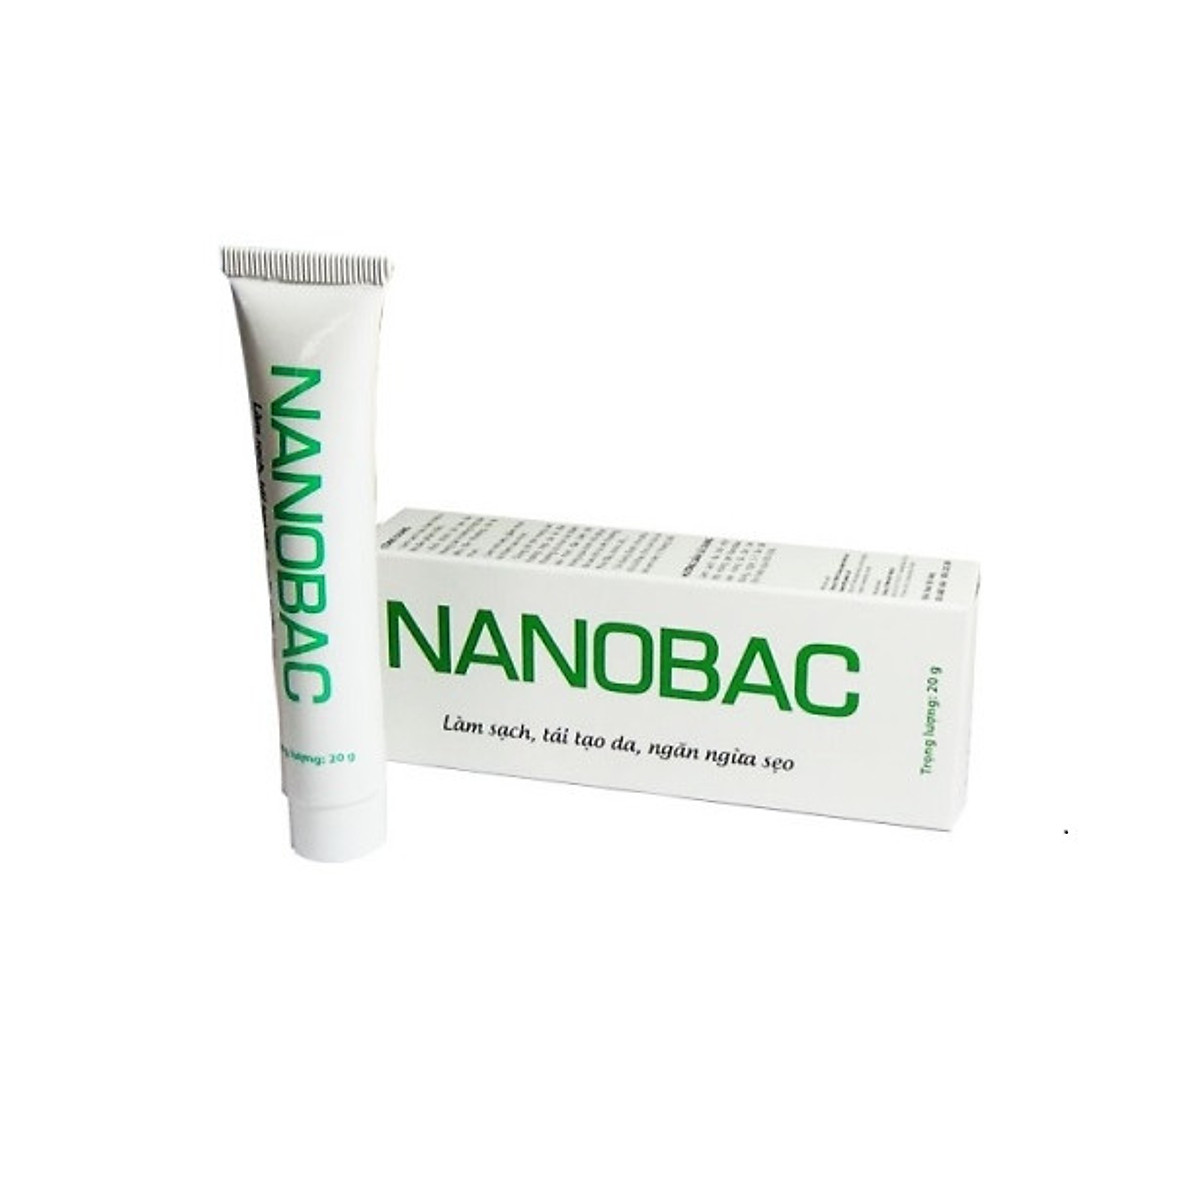 [BỘ SẢN PHẨM] Gel bôi NANOBAC tuýp 20g làm sạch, tái tạo da, ngăn ngừa sẹo  & Kem BOIHAM tuýp 10g giúp giảm hăm, bảo vệ làn da bé yêu của bạn ( hàng chính hãng) 